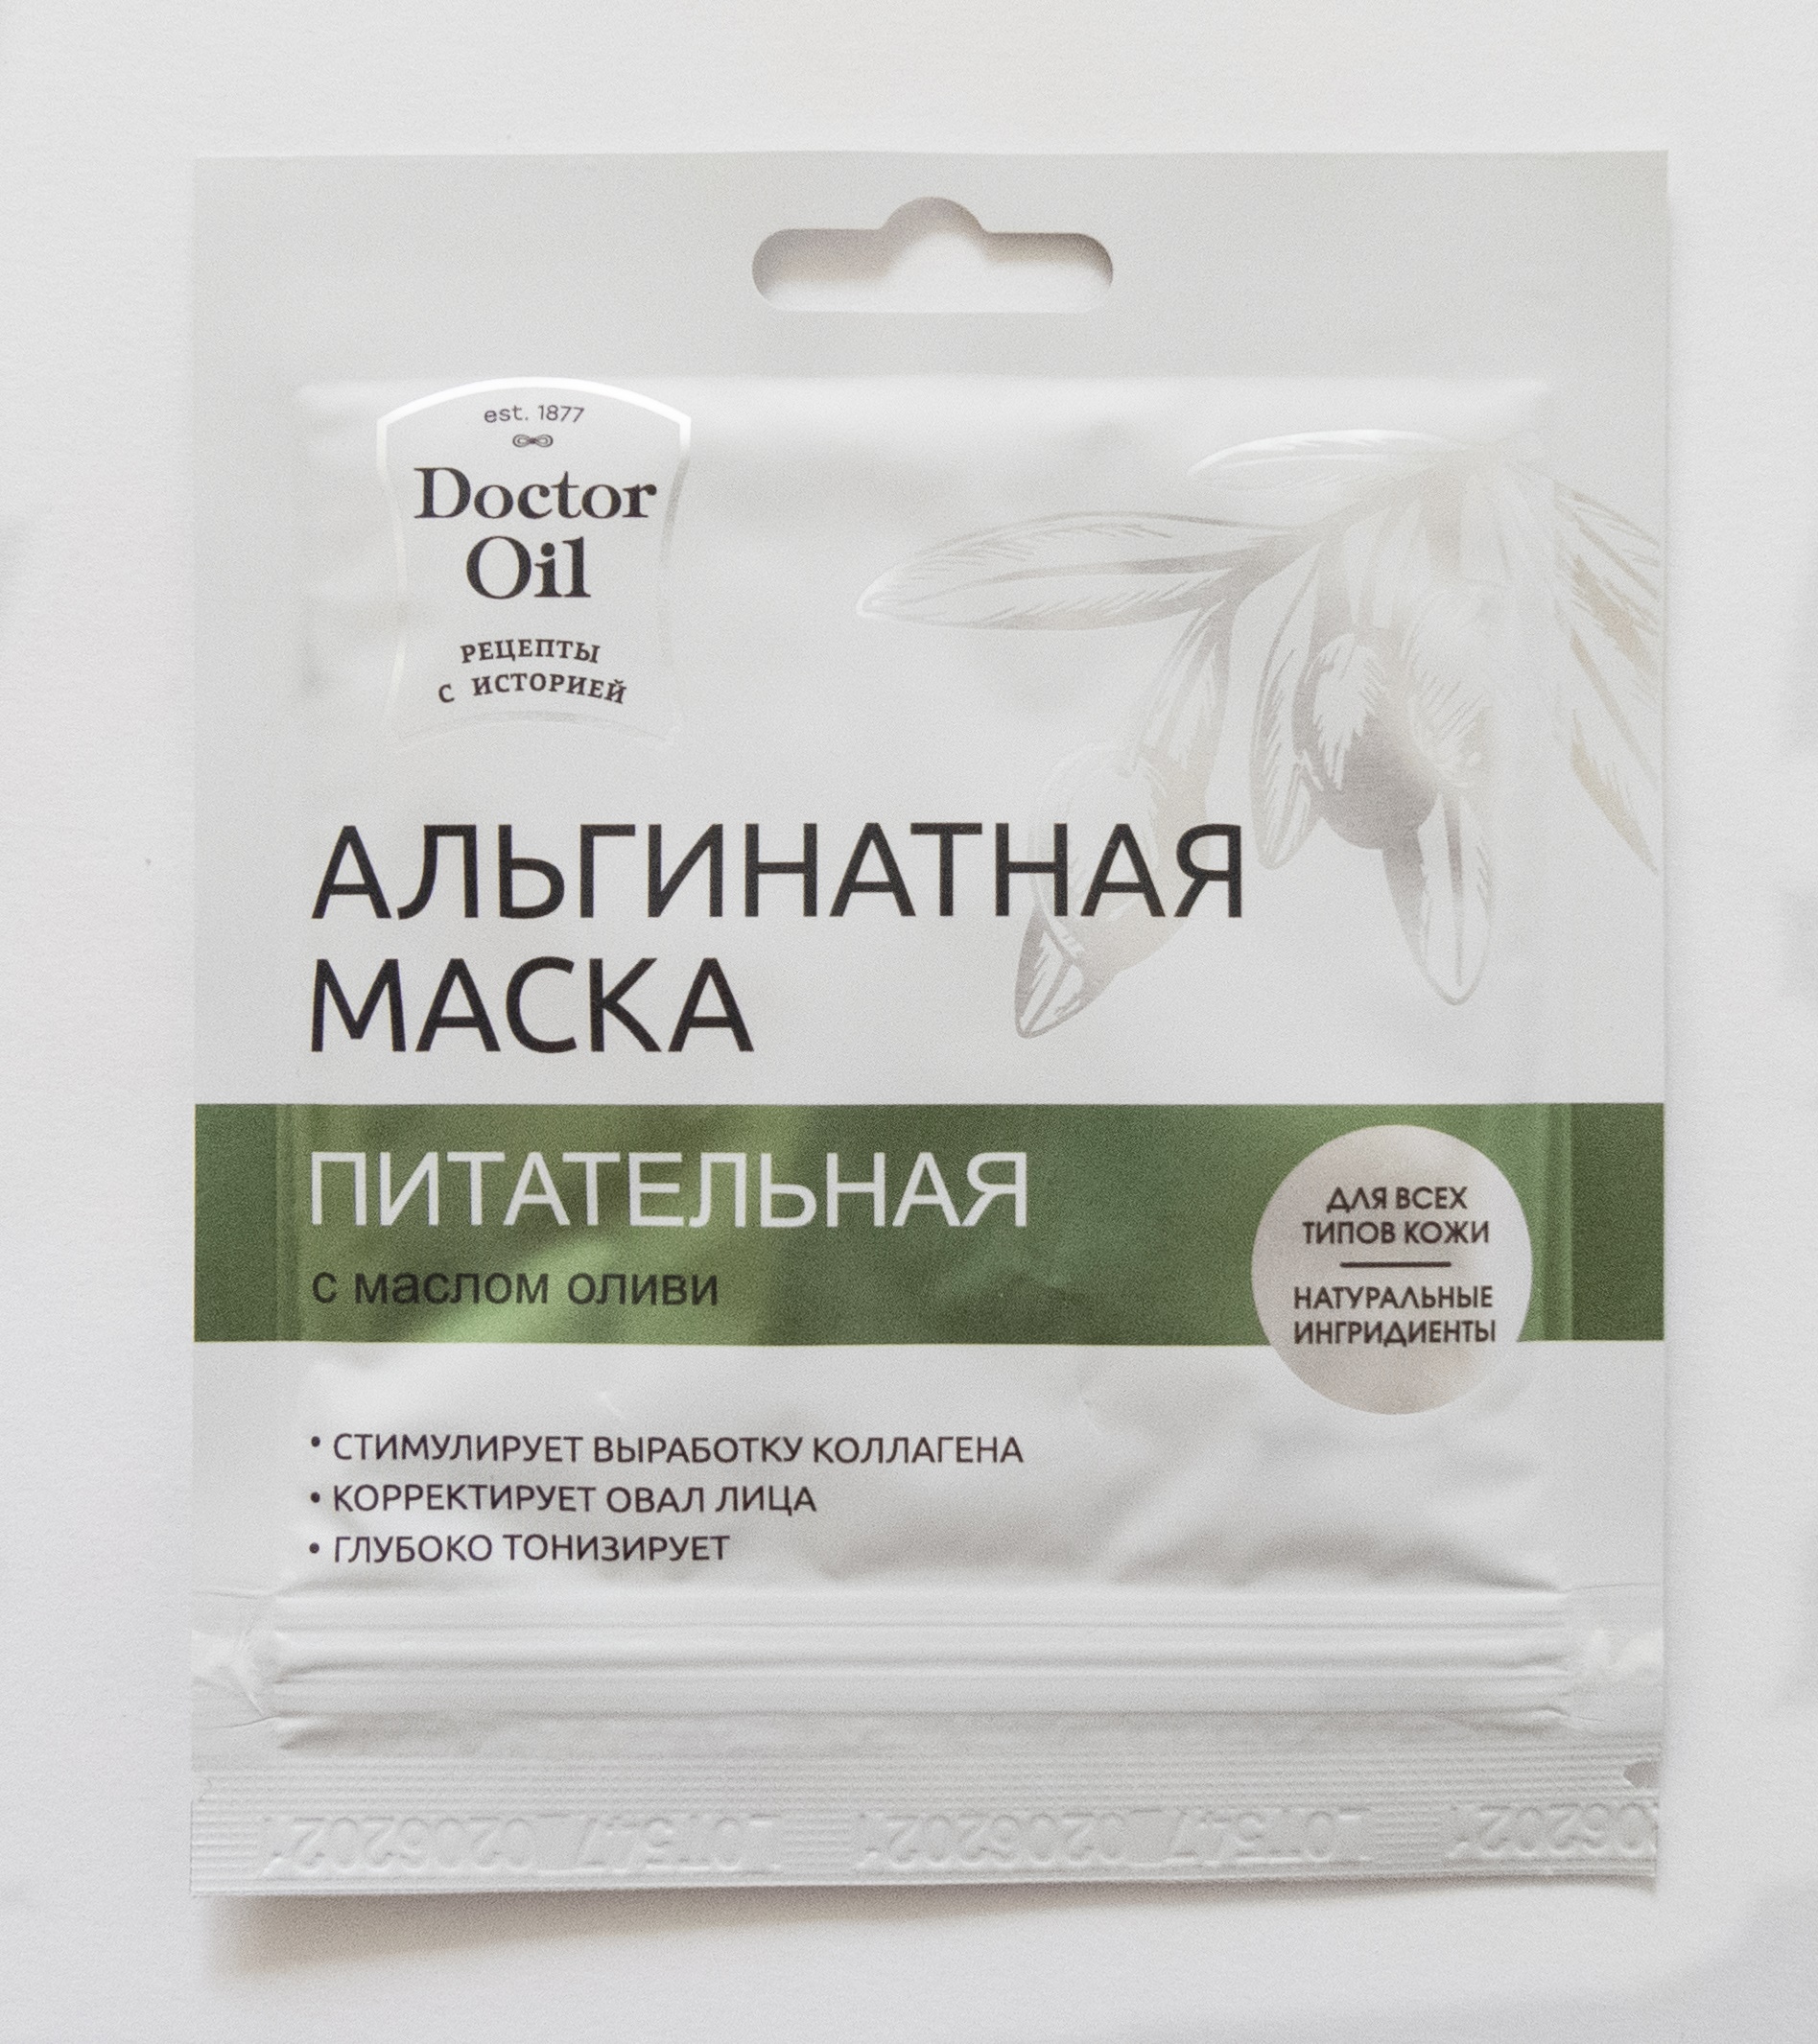 Doctor Oil Альгинатная маска Питательная с маслом оливы 30 гр. 1 саше